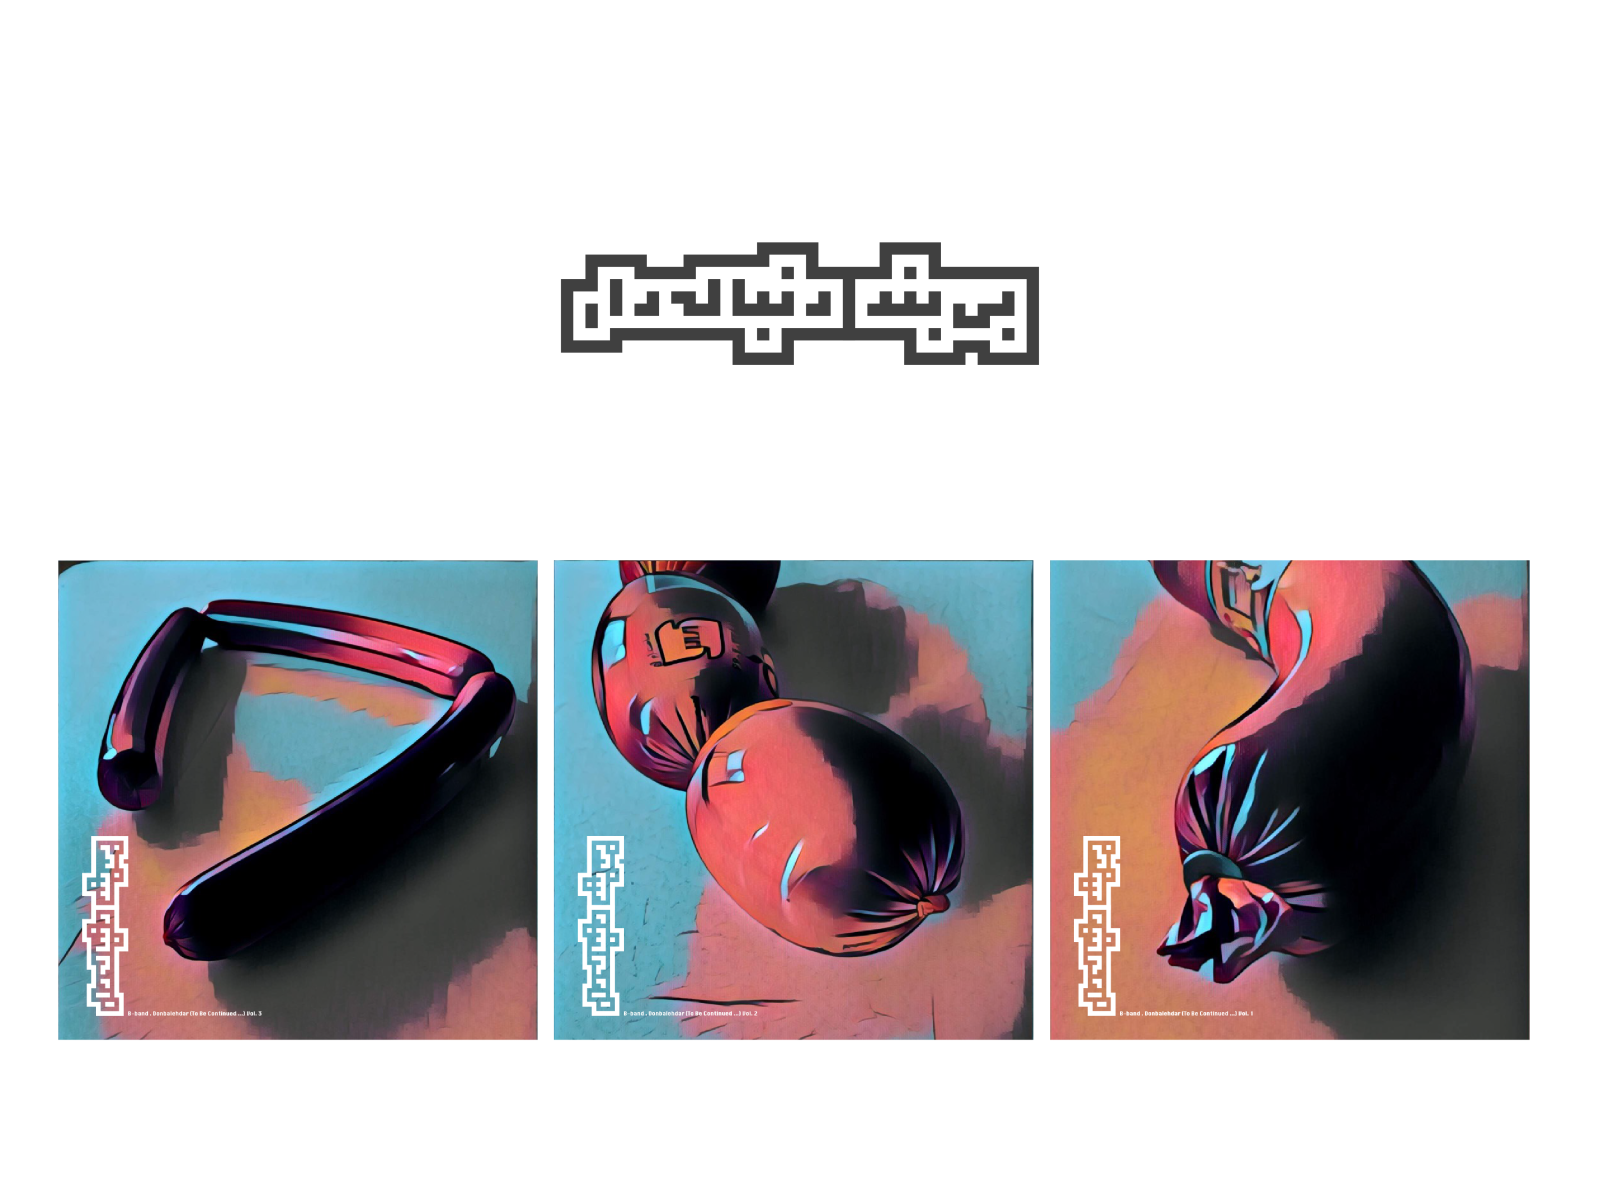 روی جلد آلبوم دنبالهدار از گروه راک بی - بند design typography vector